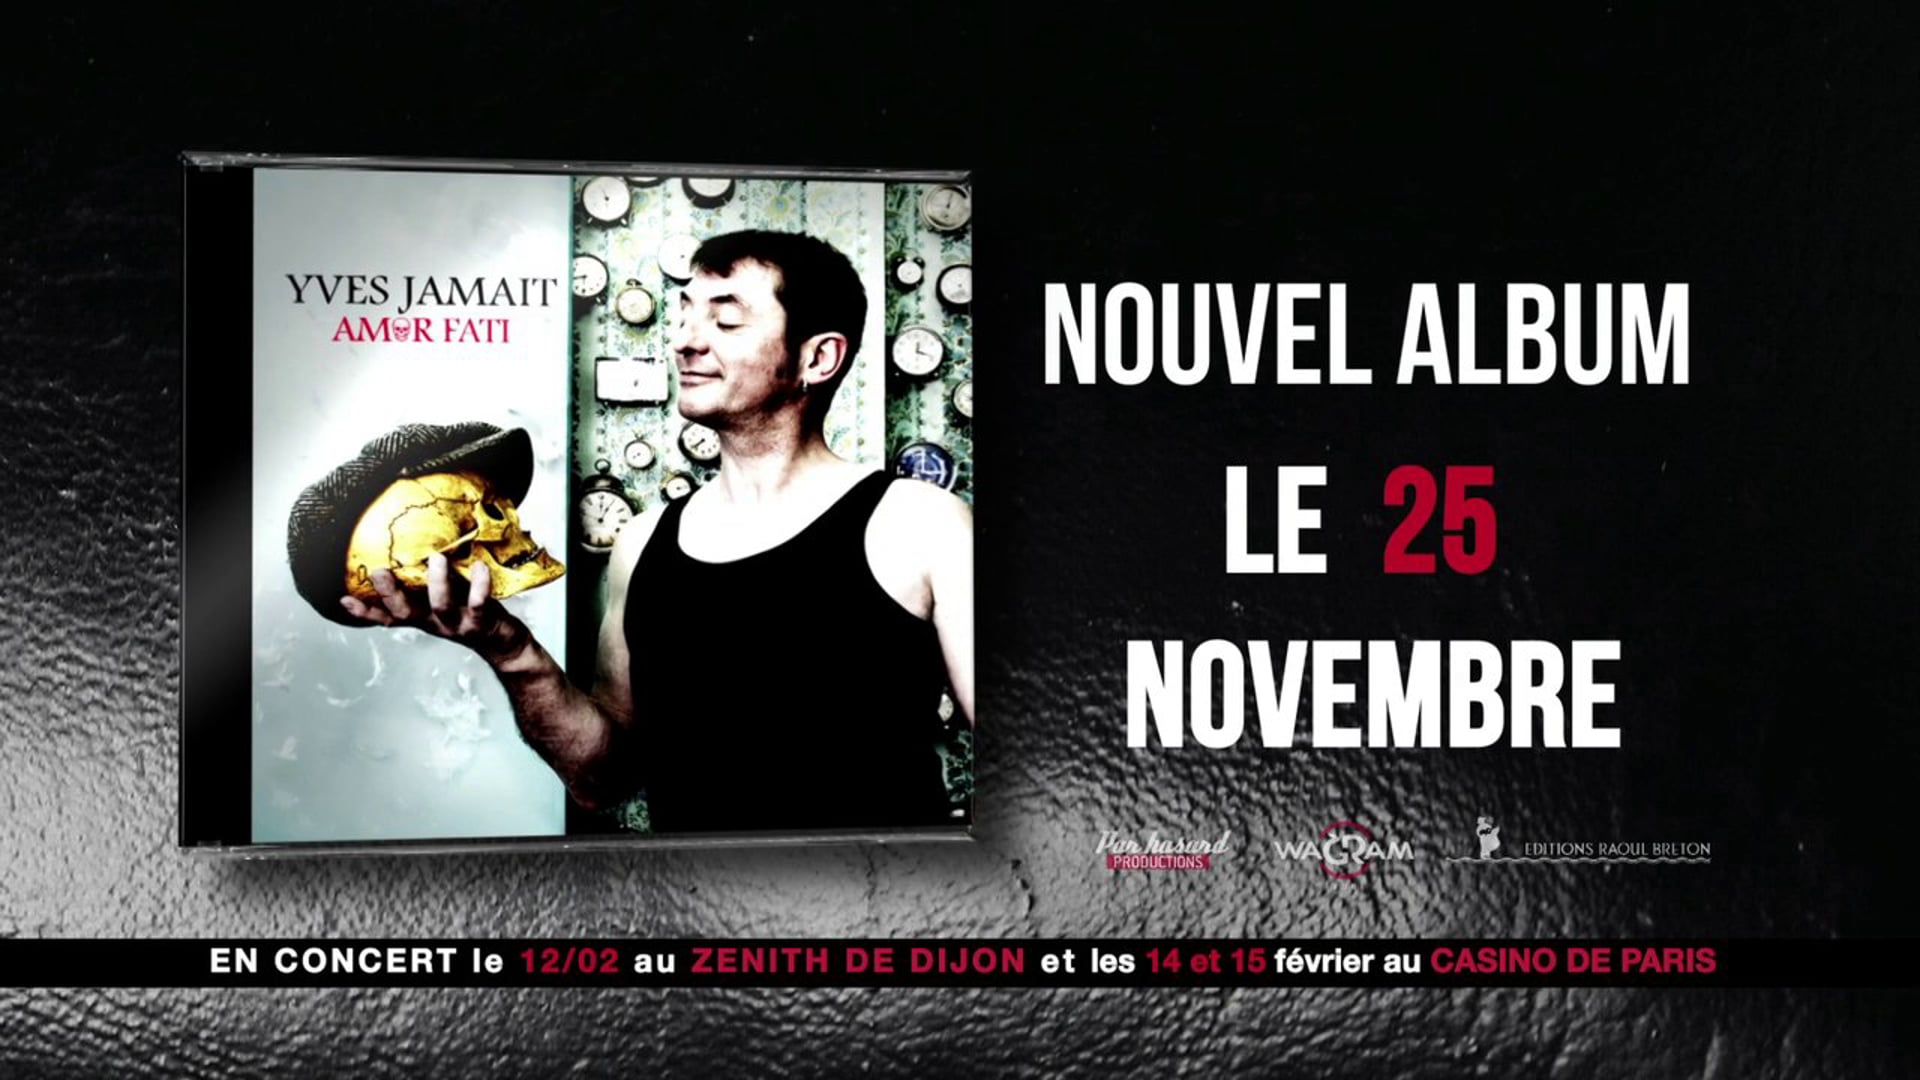 Nouvel album "Amor Fati" de Yves Jamait dans les bacs ! (spot tv version longue)